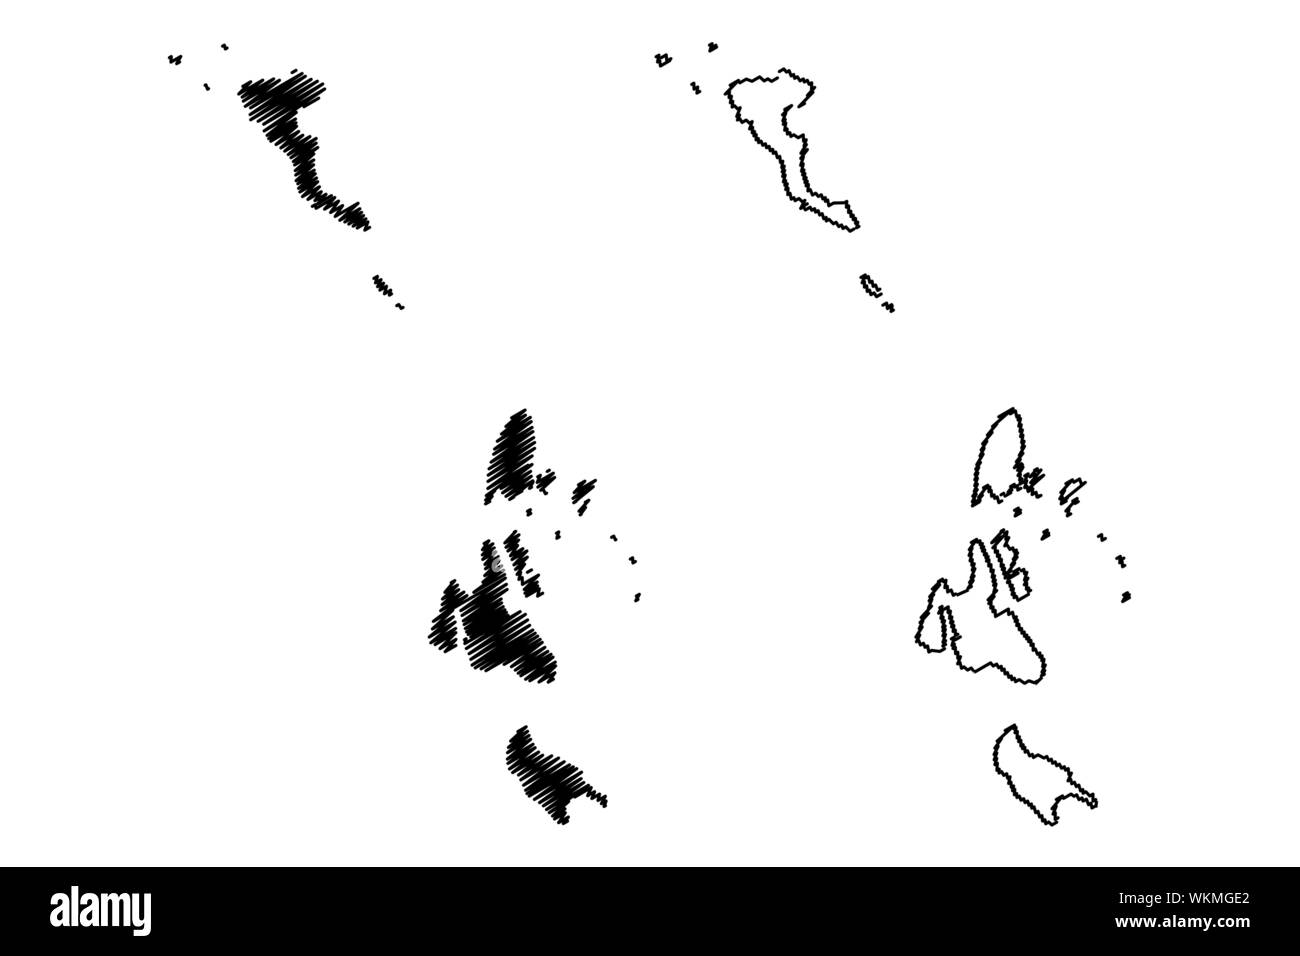 Ionische Inseln Region (Griechenland, Griechische Republik, Hellas) Karte Vektor-illustration, kritzeln Skizze Ionische Inseln Karte Stock Vektor